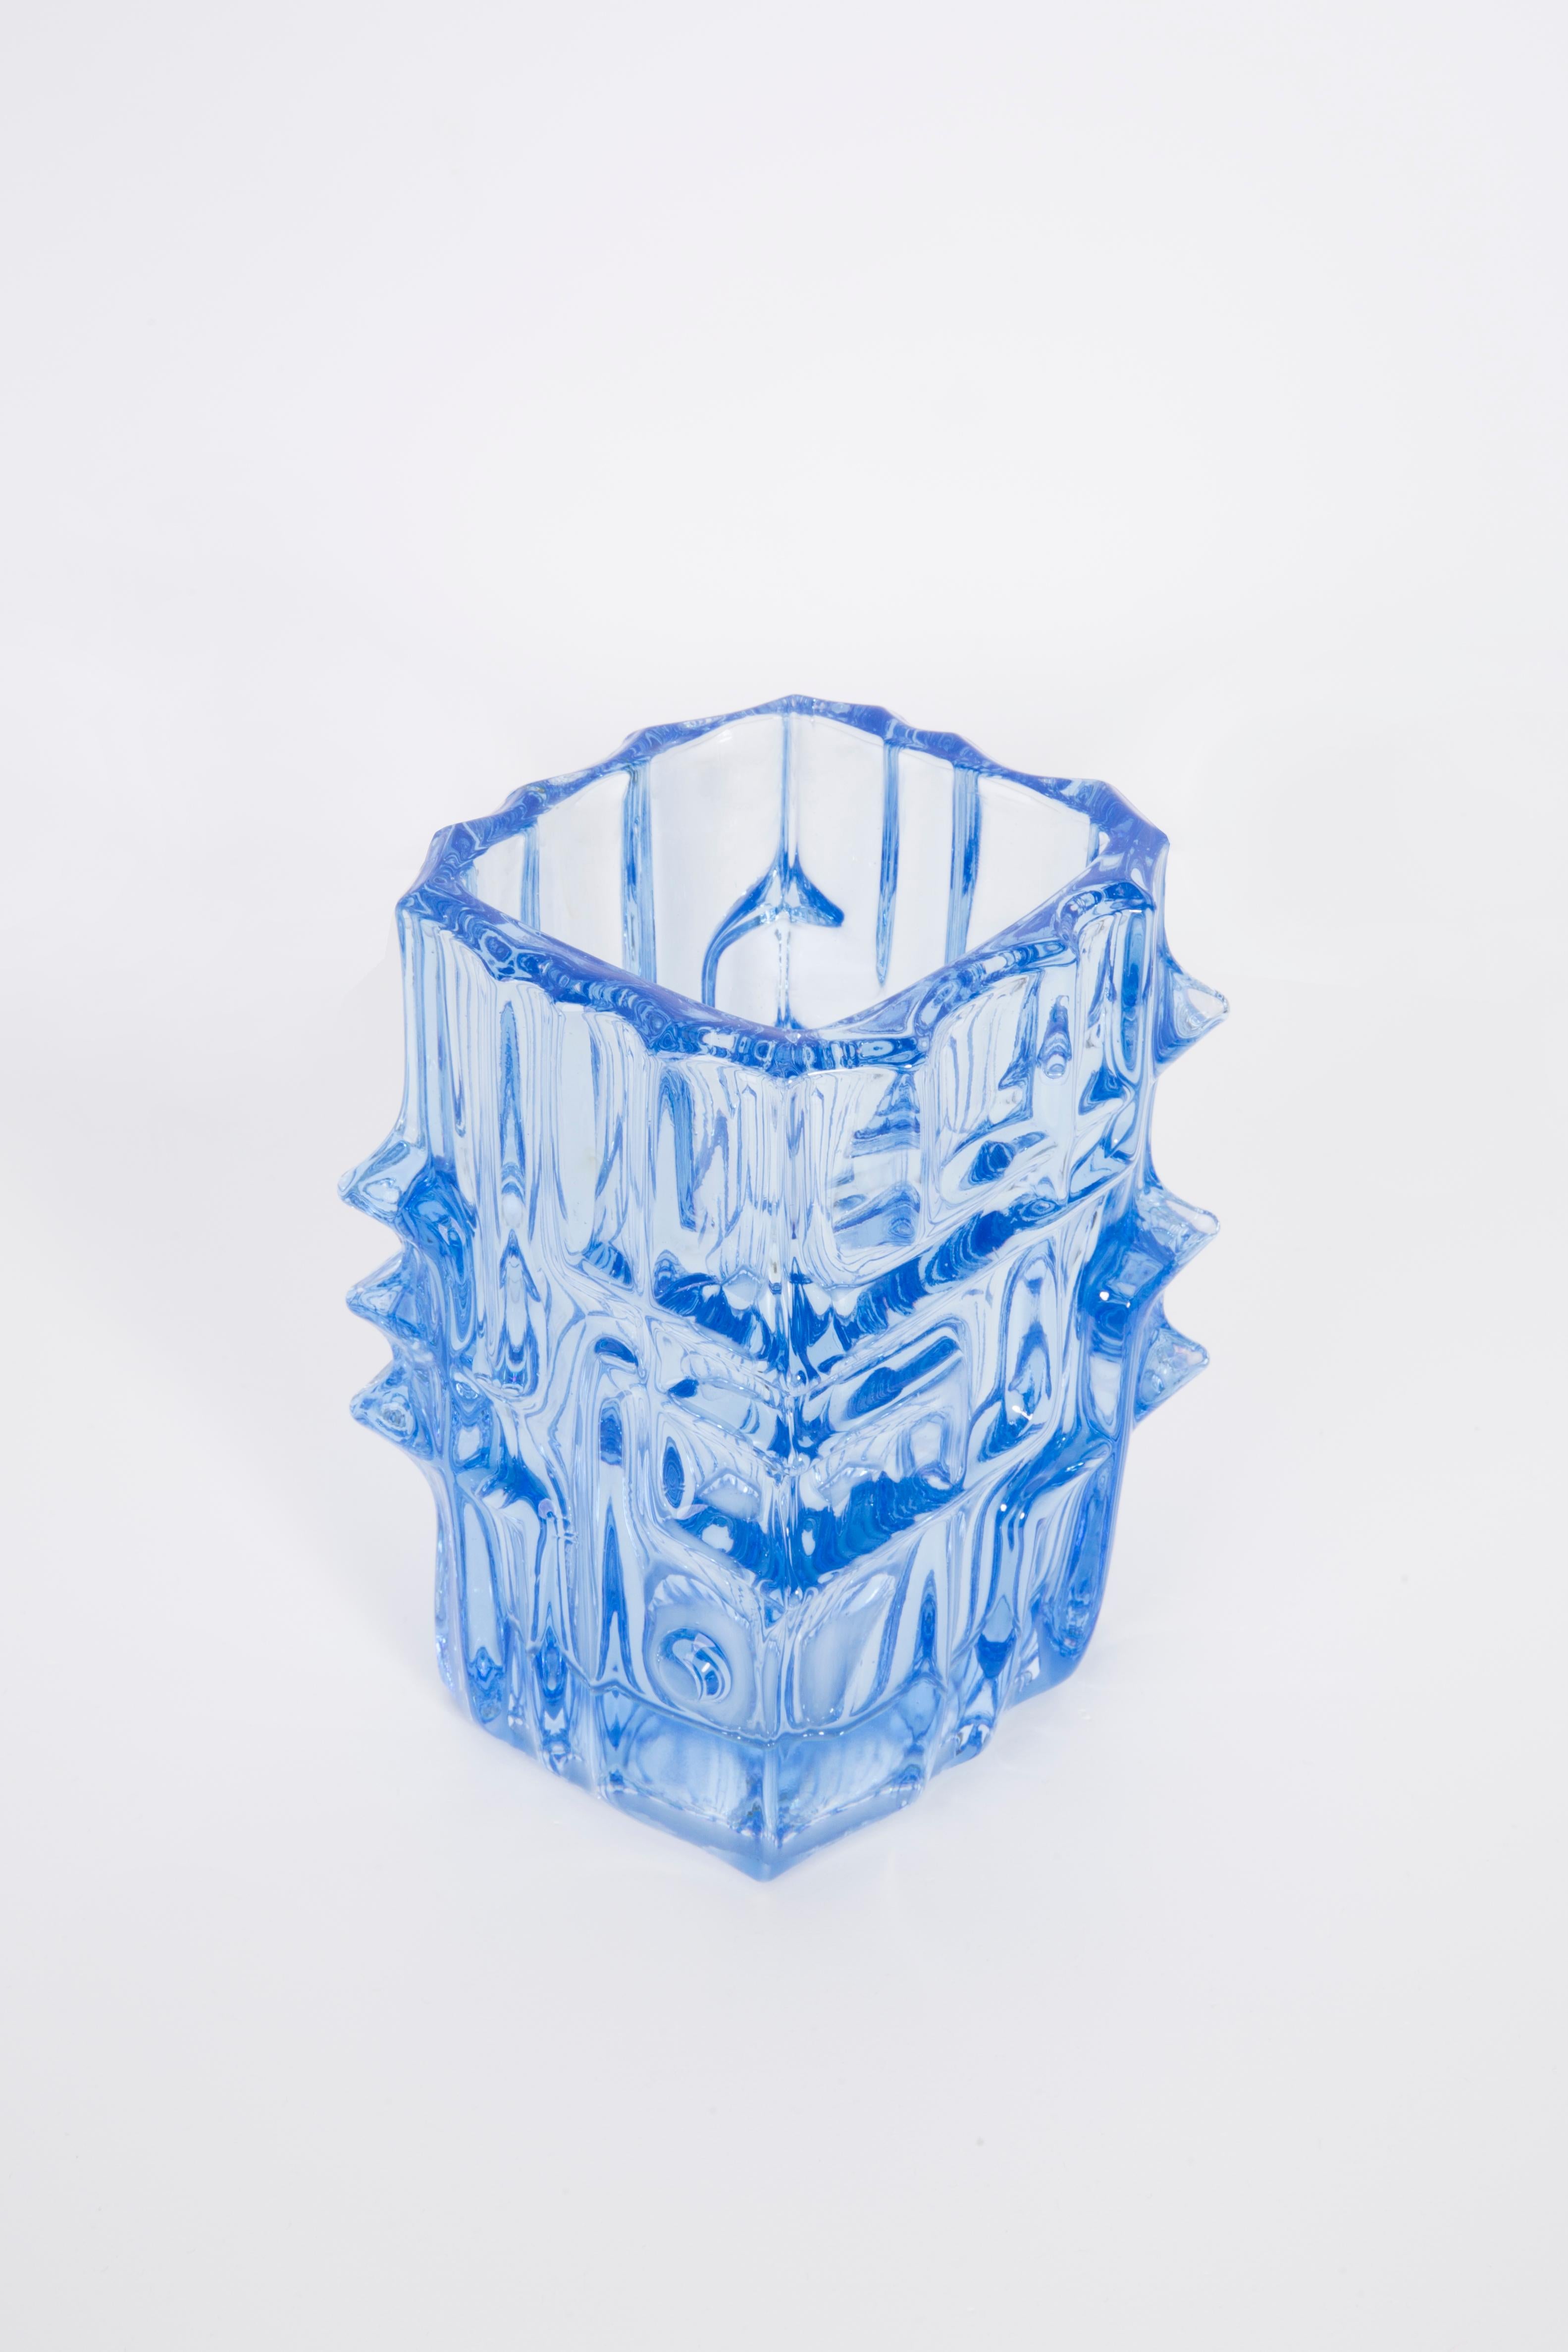 Vase de Vladislav Urban - créateur de verre tchécoslovaque. Produit dans les années 1960.
Verre pressé en parfait état.
Le vase semble avoir été sorti de sa boîte.
L'image reflète la couleur dans laquelle elle est présentée en direct.

Pas